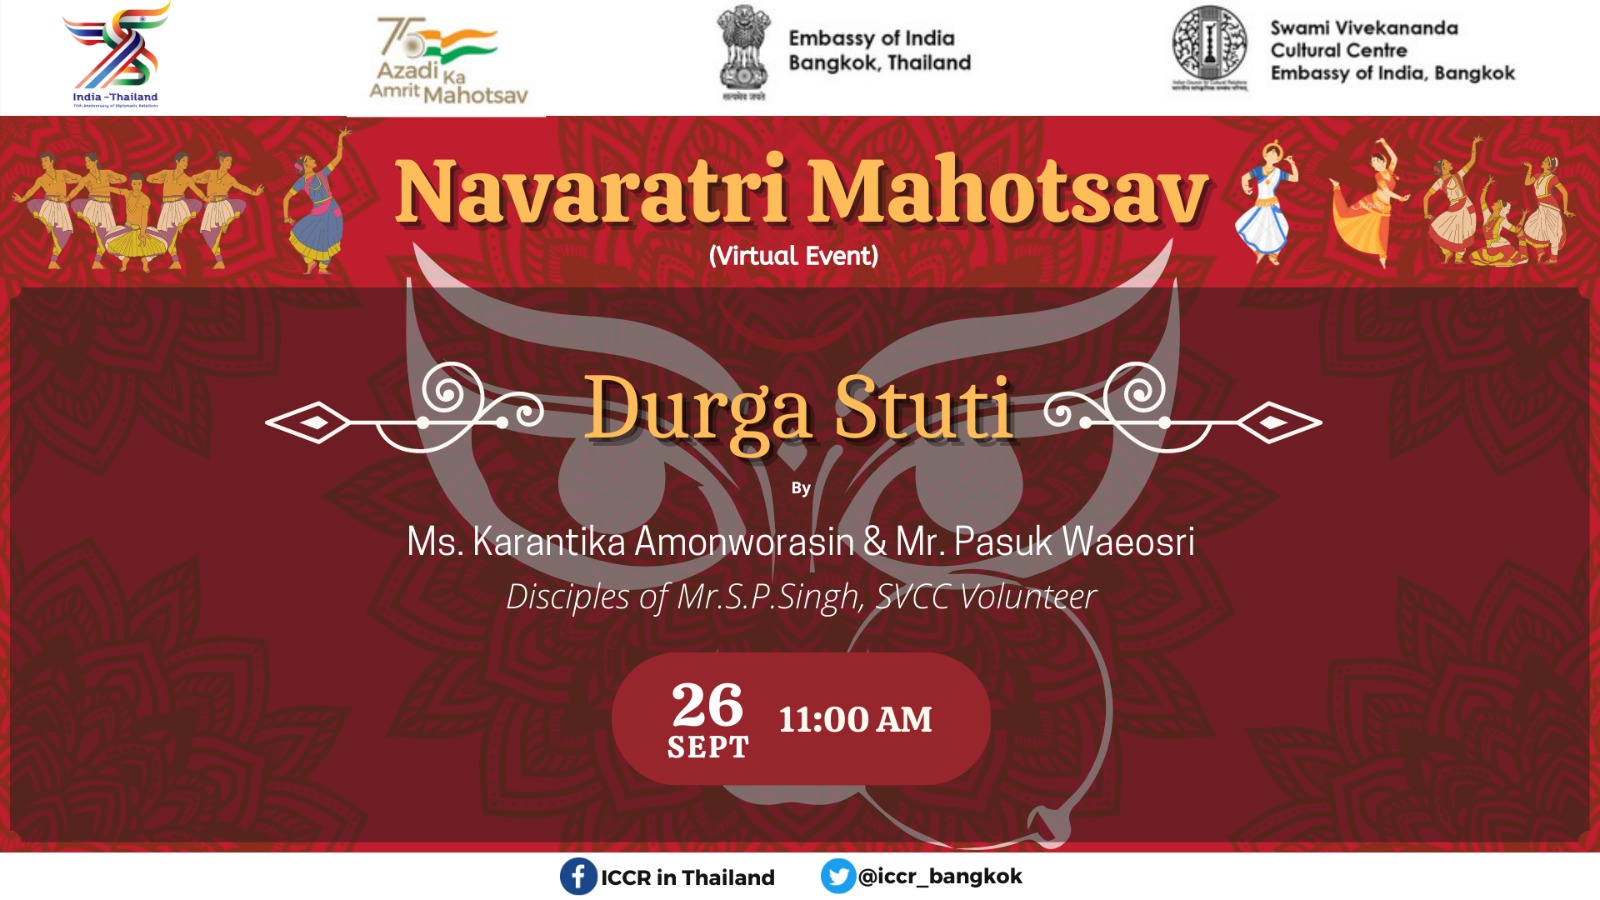 SVCC का भारतीय दूतावास, बैंकॉक, 26 सितंबर से 4 अक्टूबर, 2022 तक नवरात्रि महोत्सव के उपलक्ष्य में एक "नवरात्रि महोत्सव" का आयोजन कर रहा है।